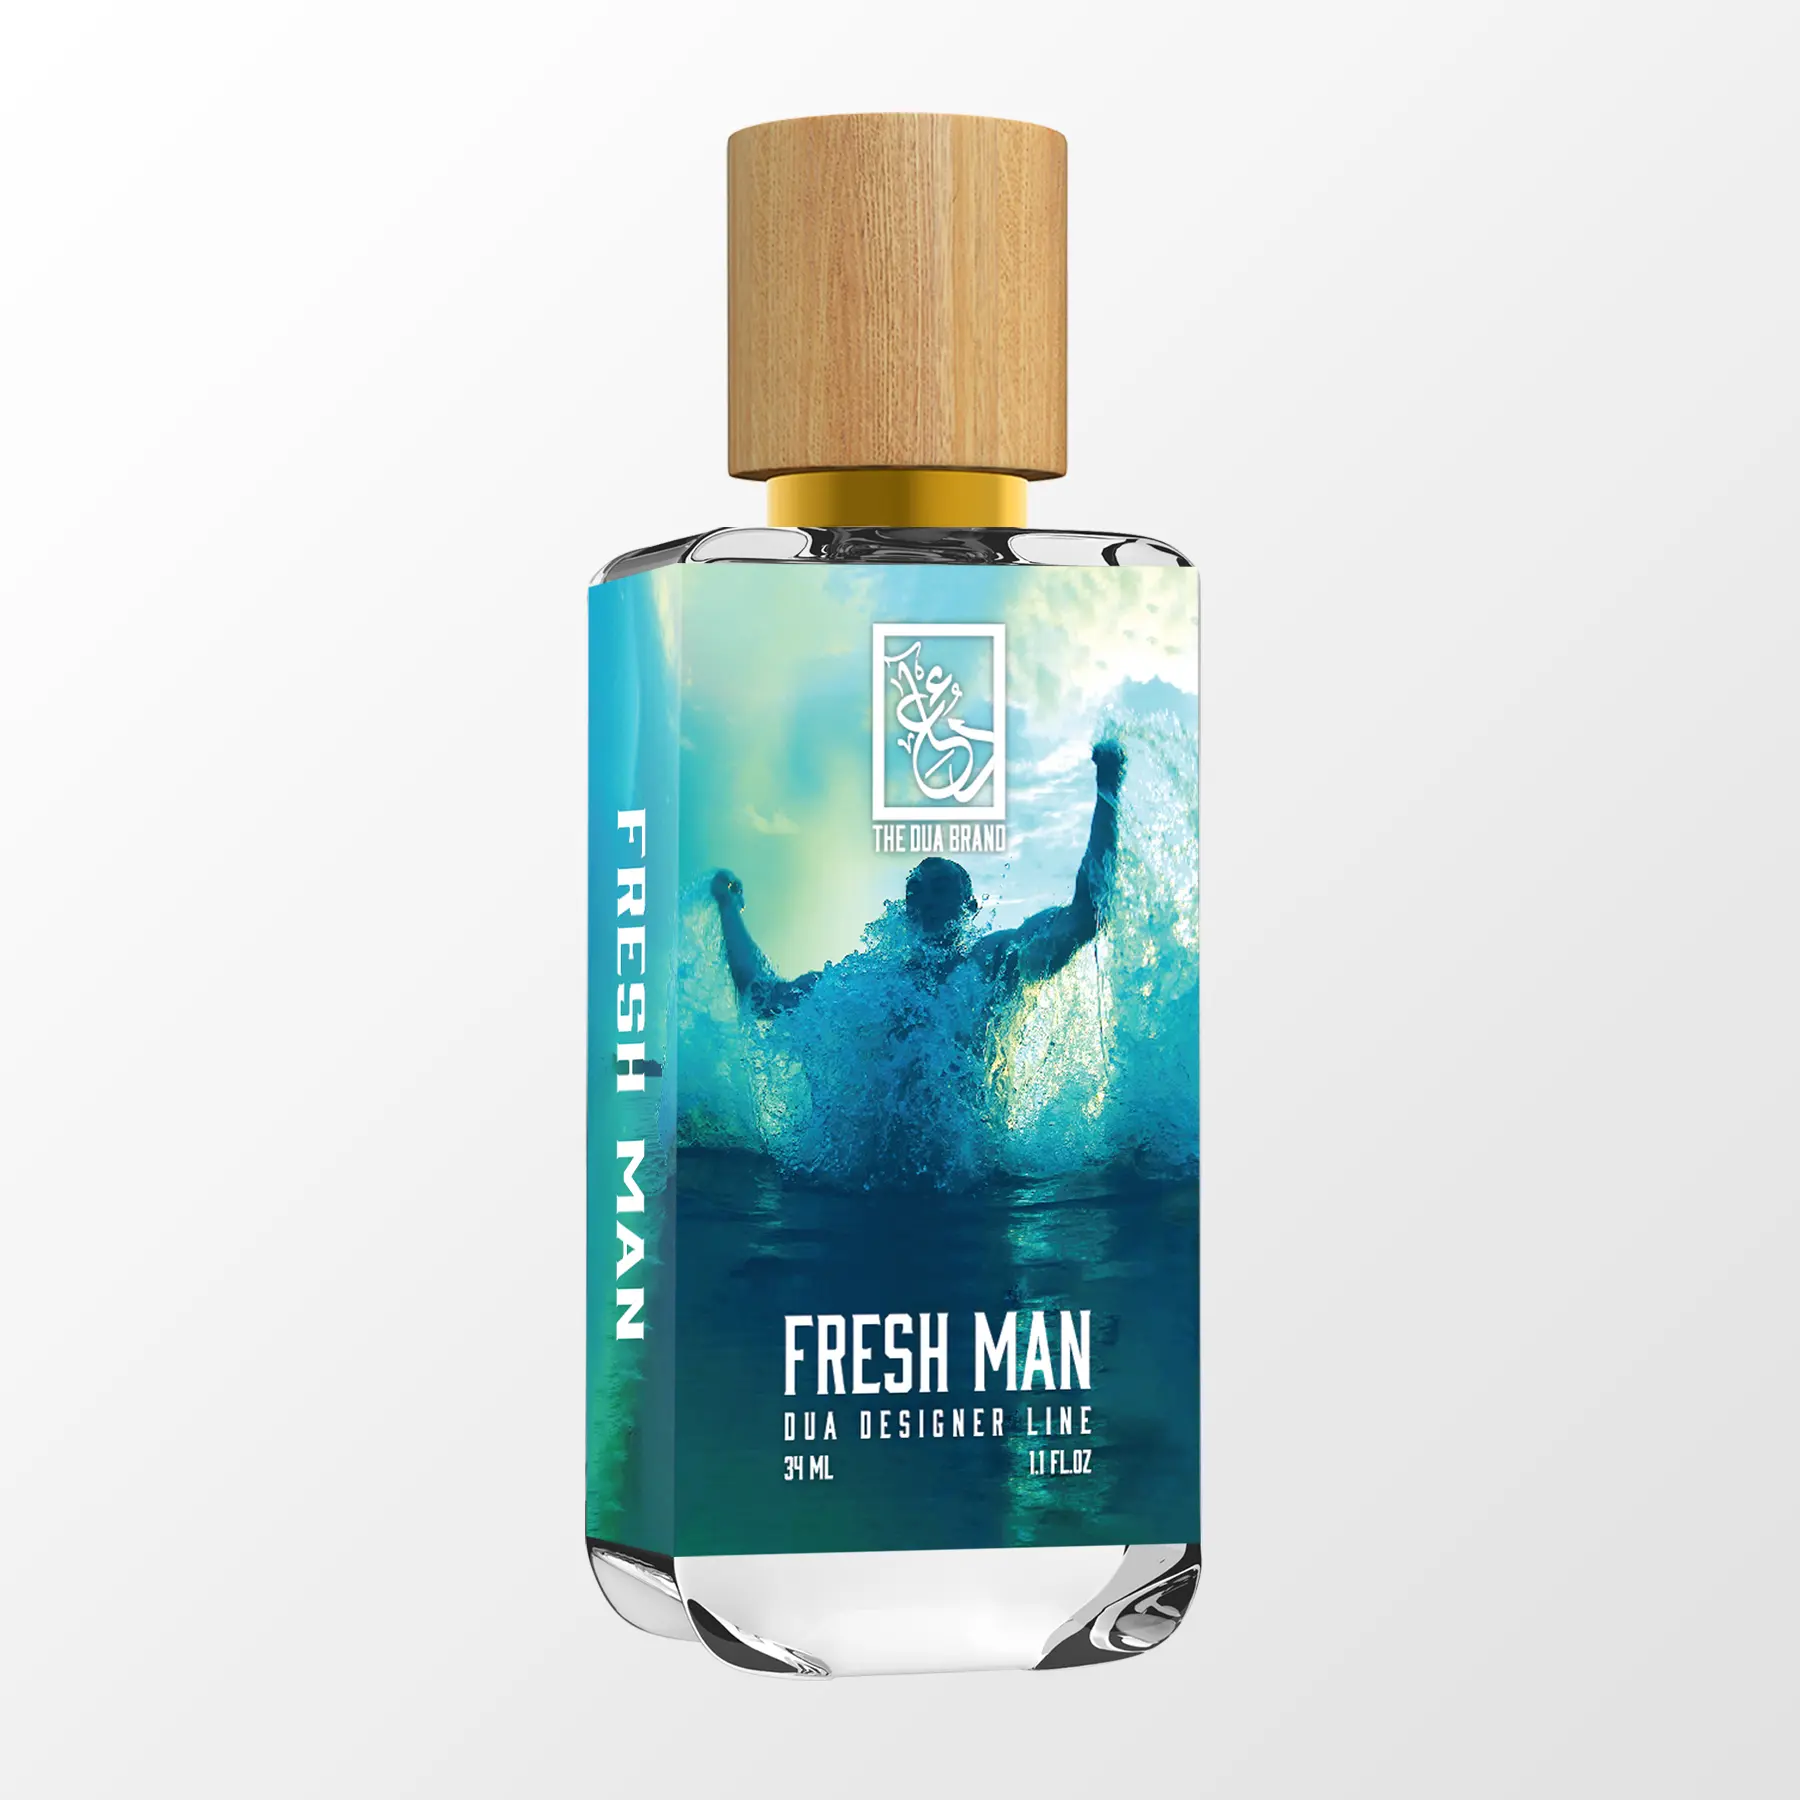 Fresh Man - Dua Fragrances - Inspired by Versace Man Eau Fraîche Versace - Masculine Perfume - 34ml/1.1 fl oz - Extrait de Parfum